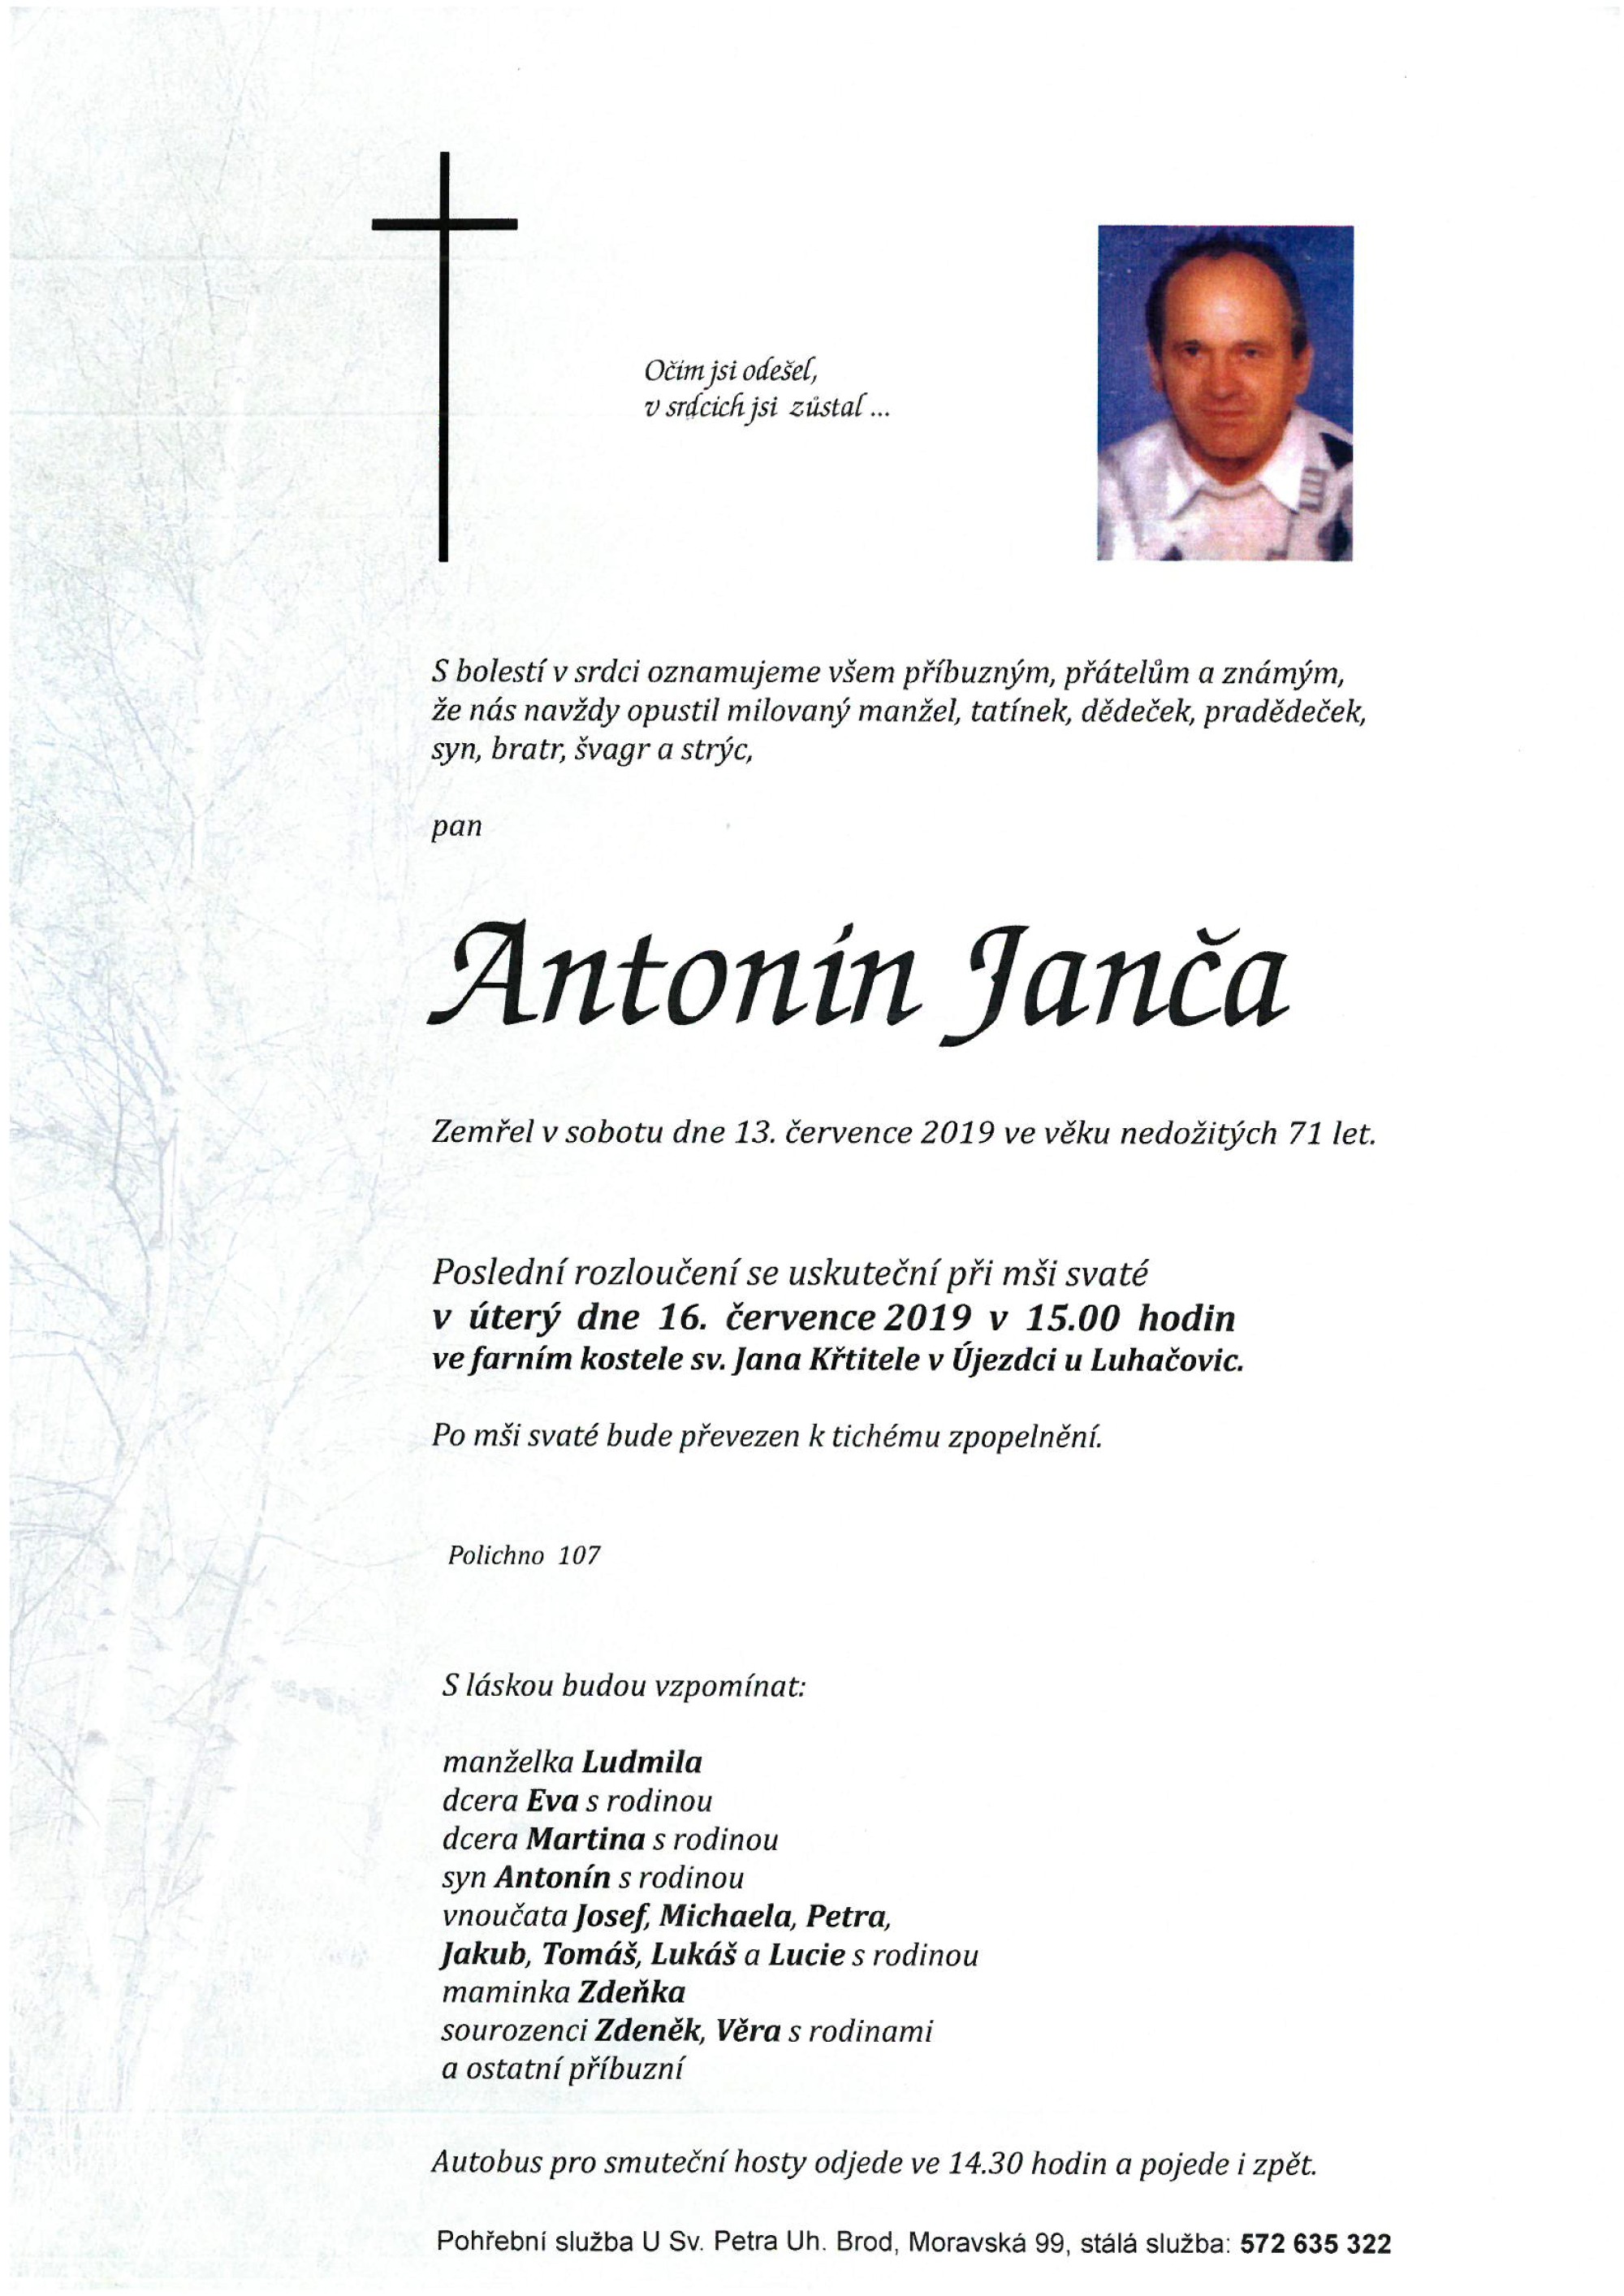 Antonín Janča